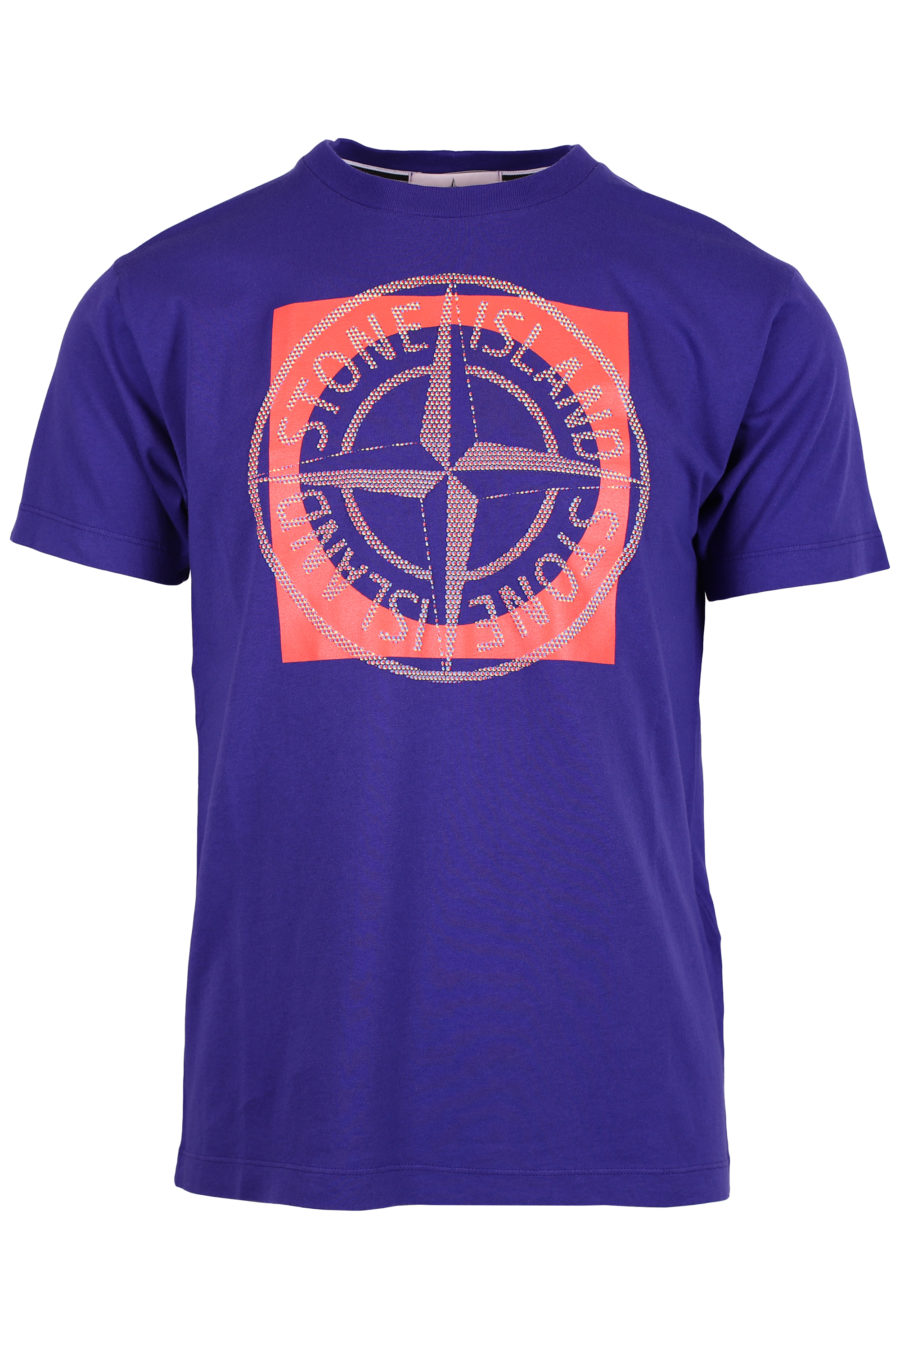 Camiseta de color violeta con logotipo multicolor grande - IMG 2506